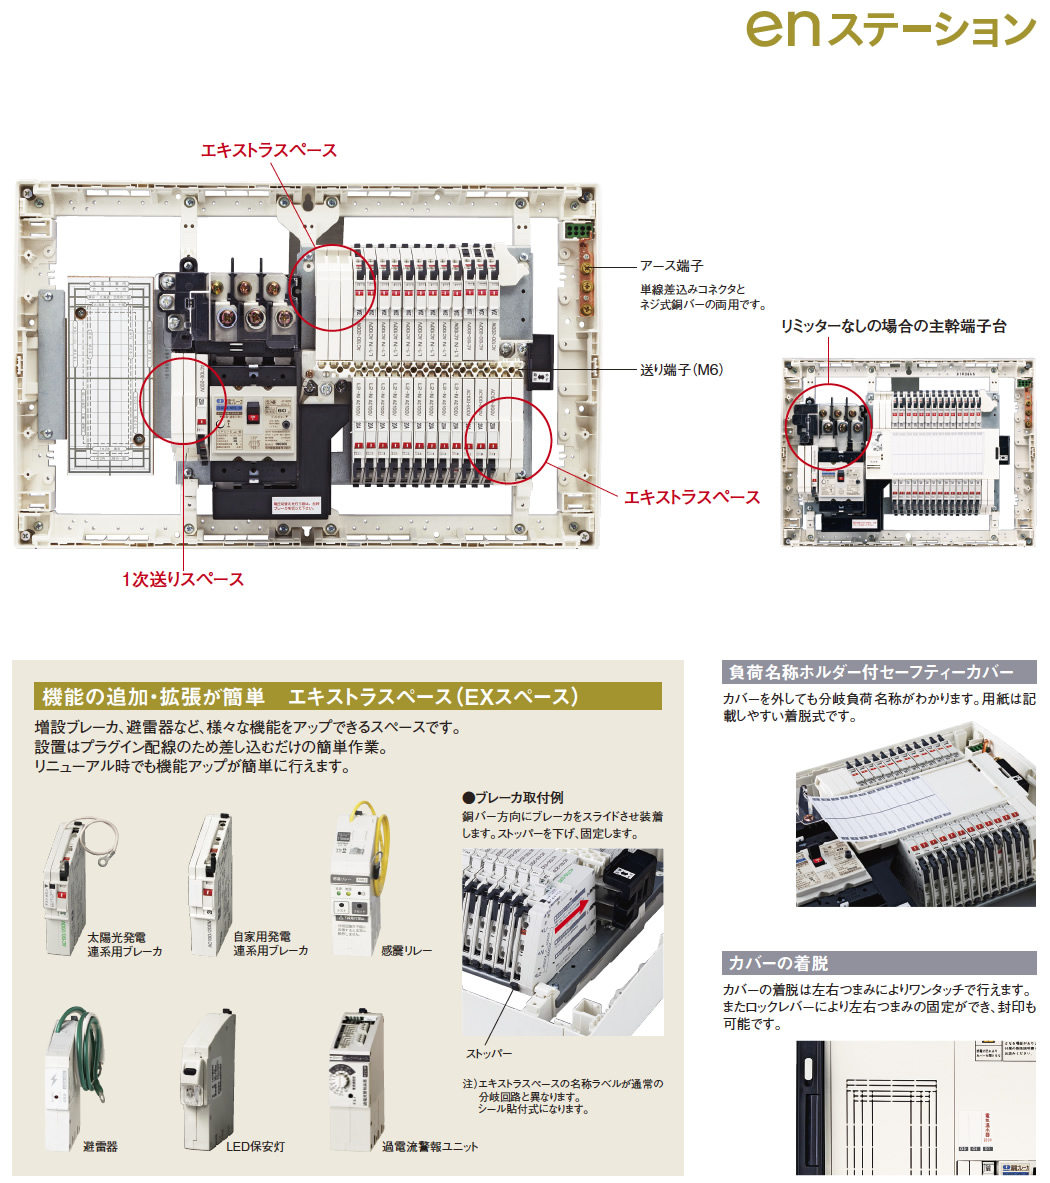 河村電器産業 en2d7400-2v-